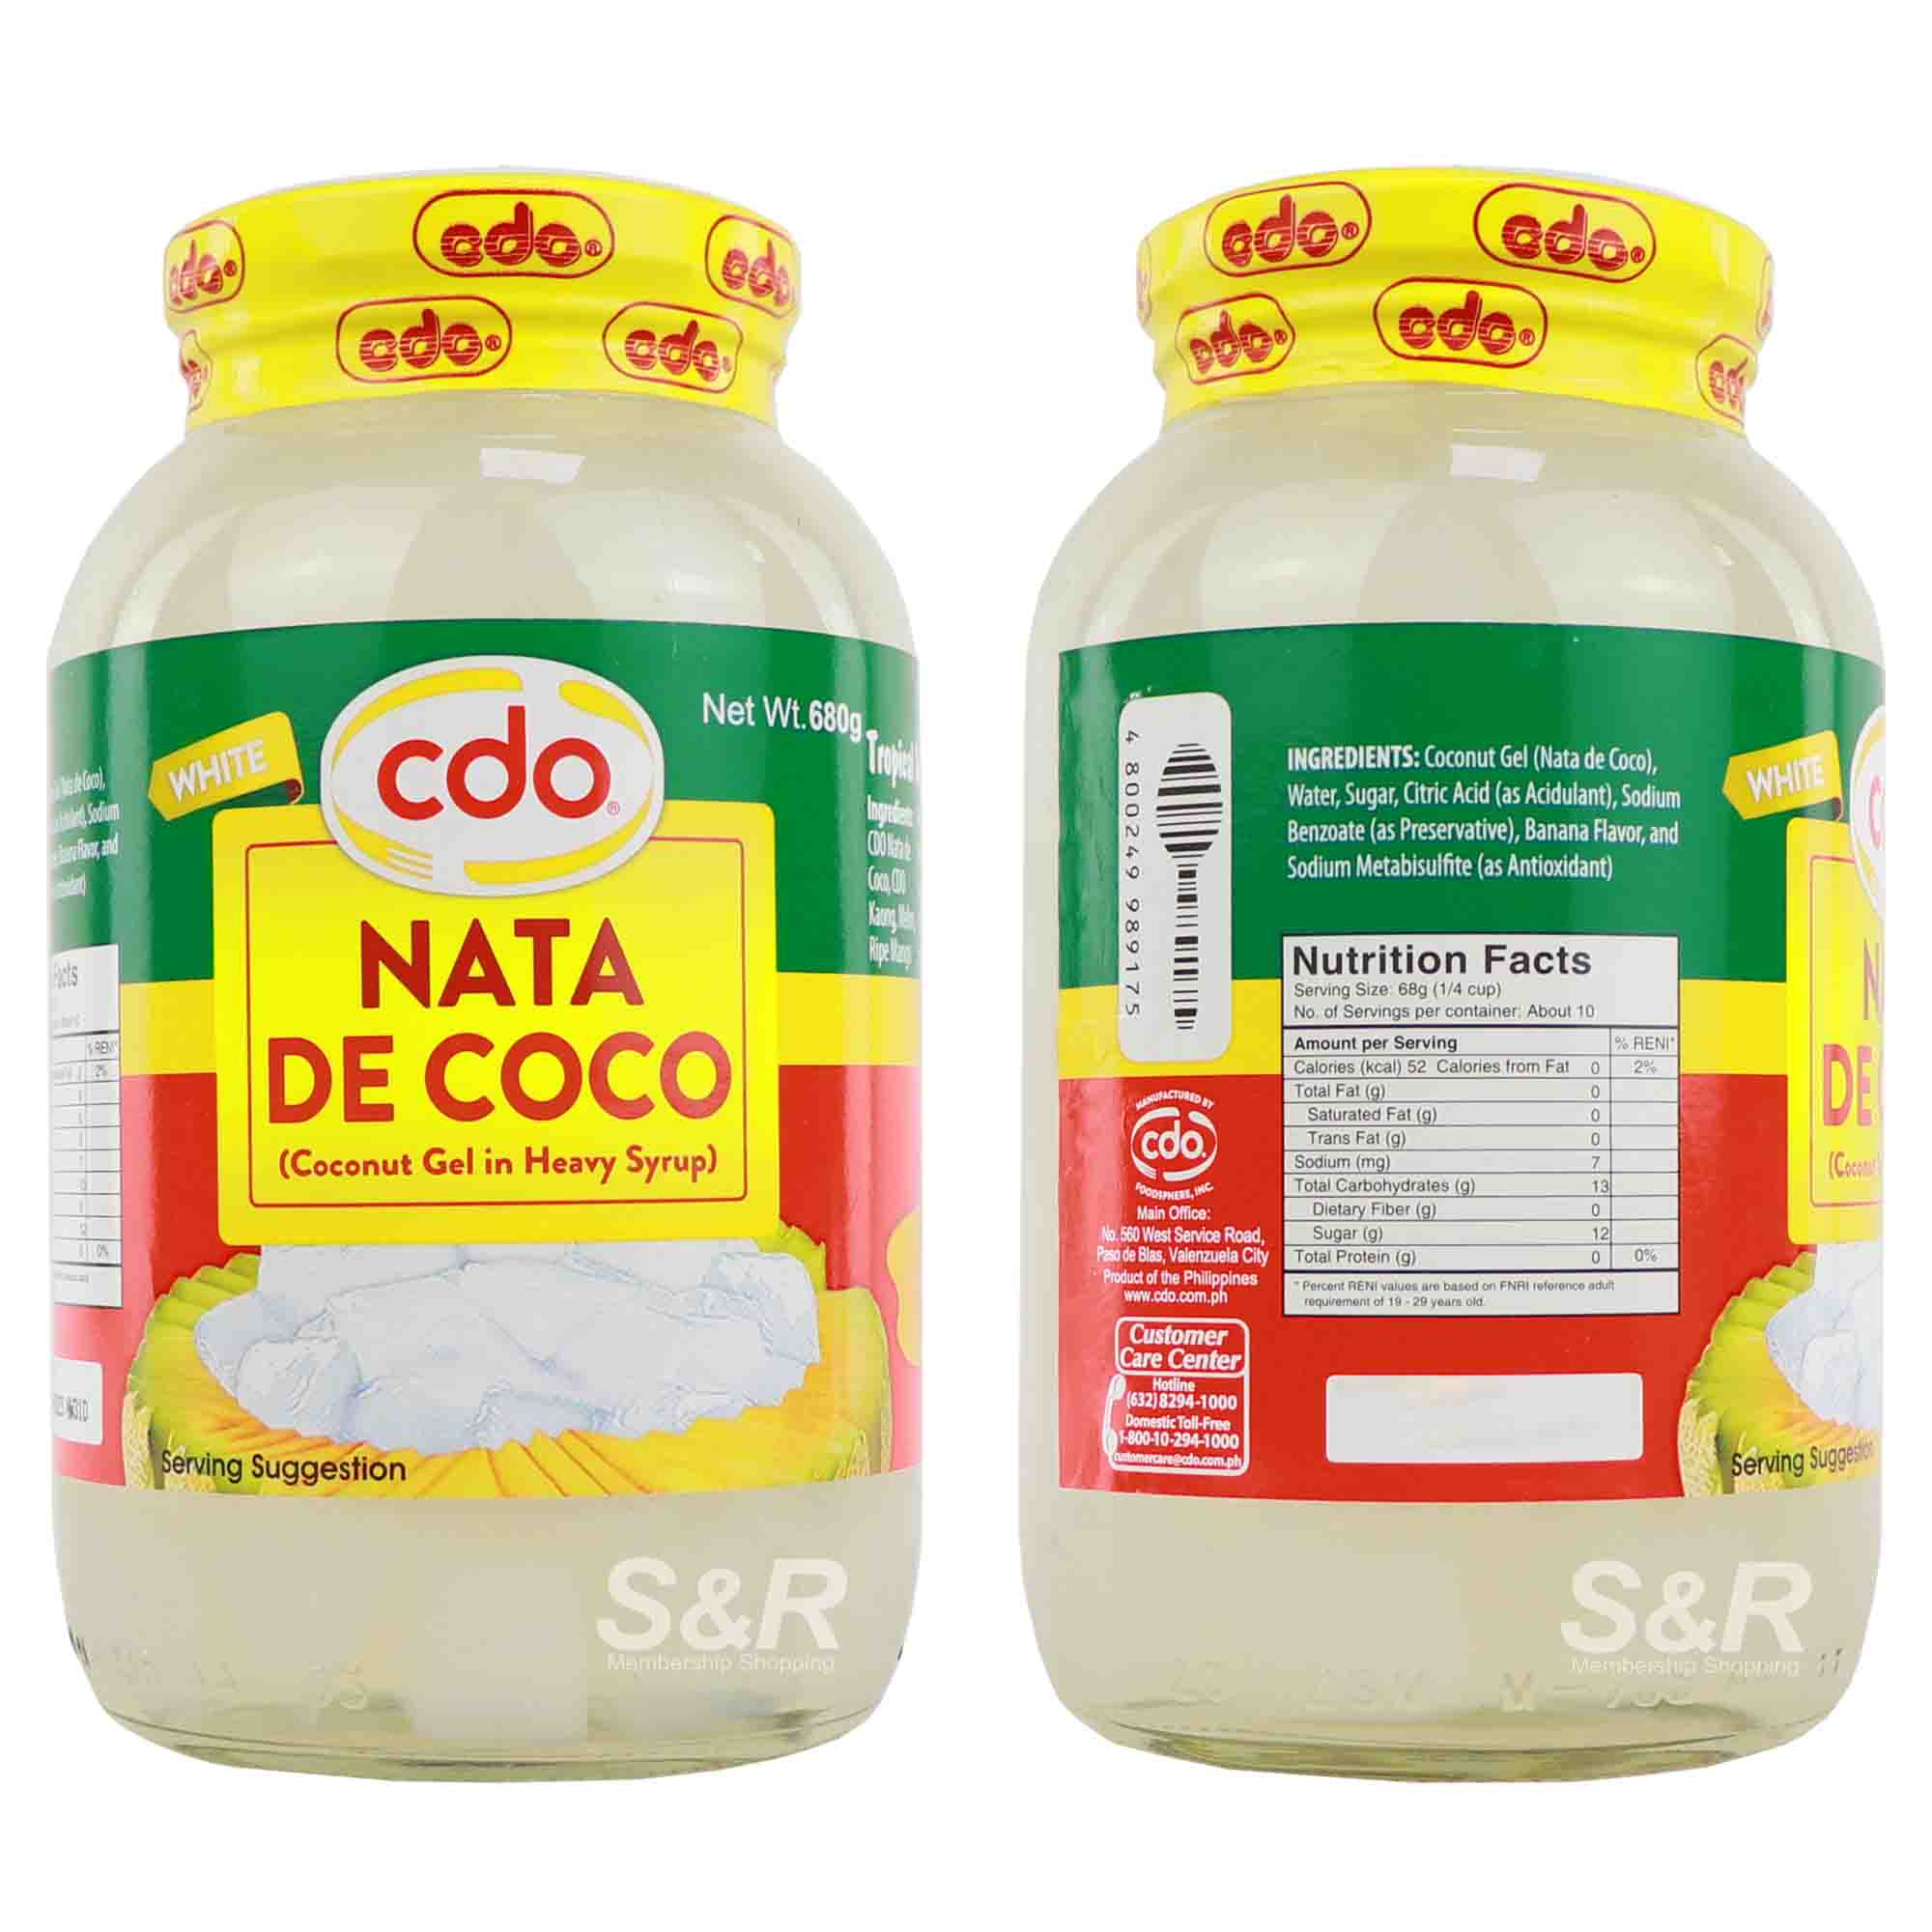 CDO White Nata De Coco (Coconut Gel in Heavy Syrup) 680g